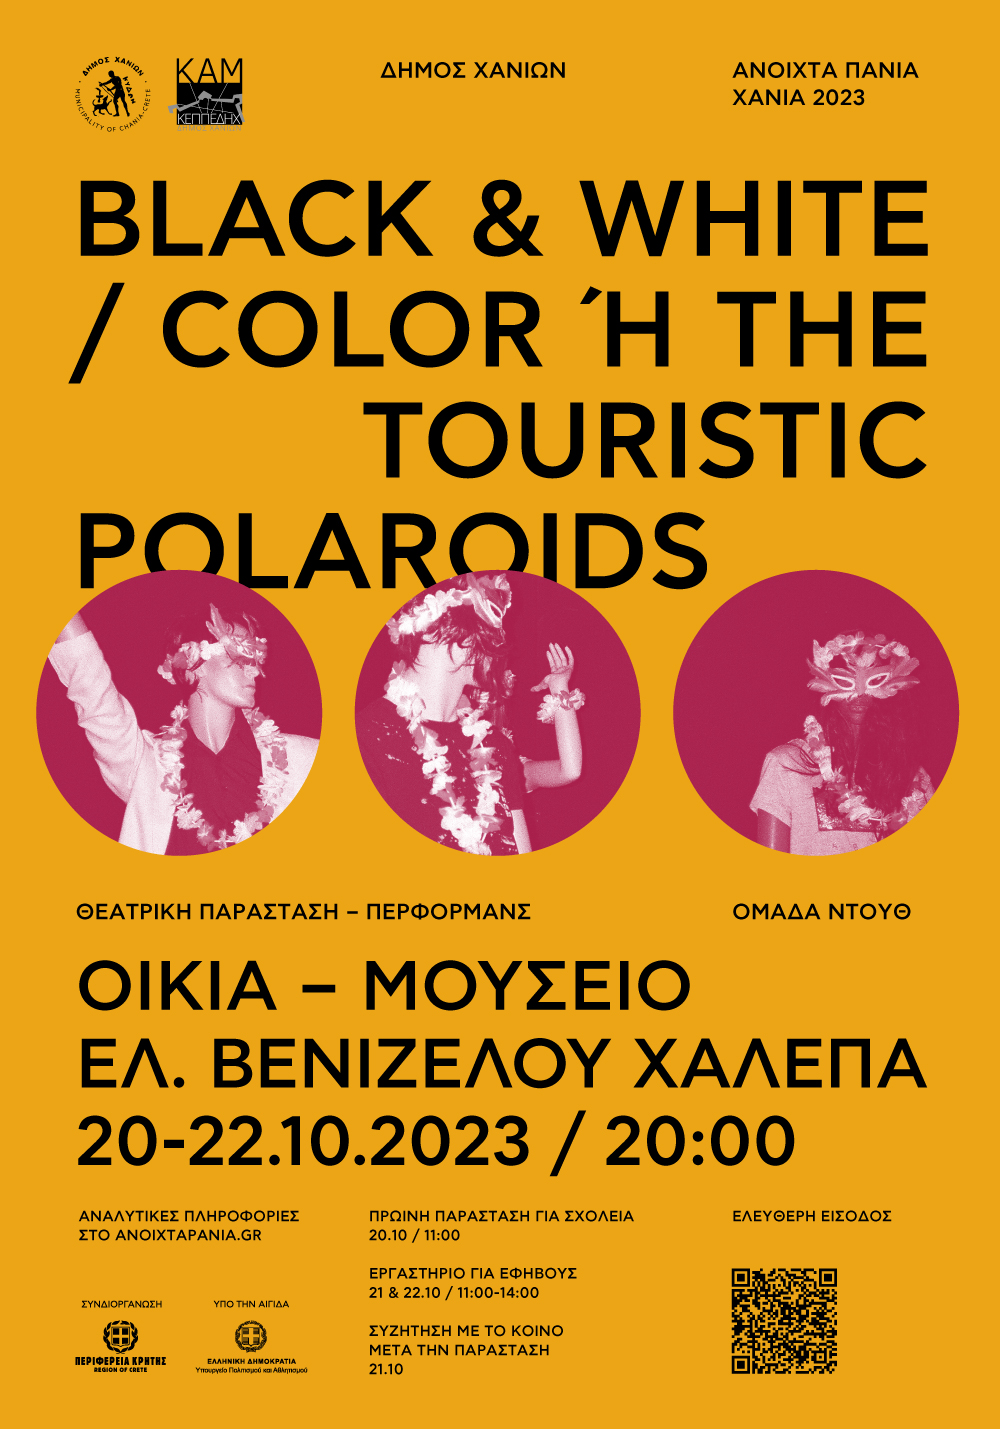 Ανοιχτά Πανιά 2023 – “Black & white / color ή The touristic polaroids”